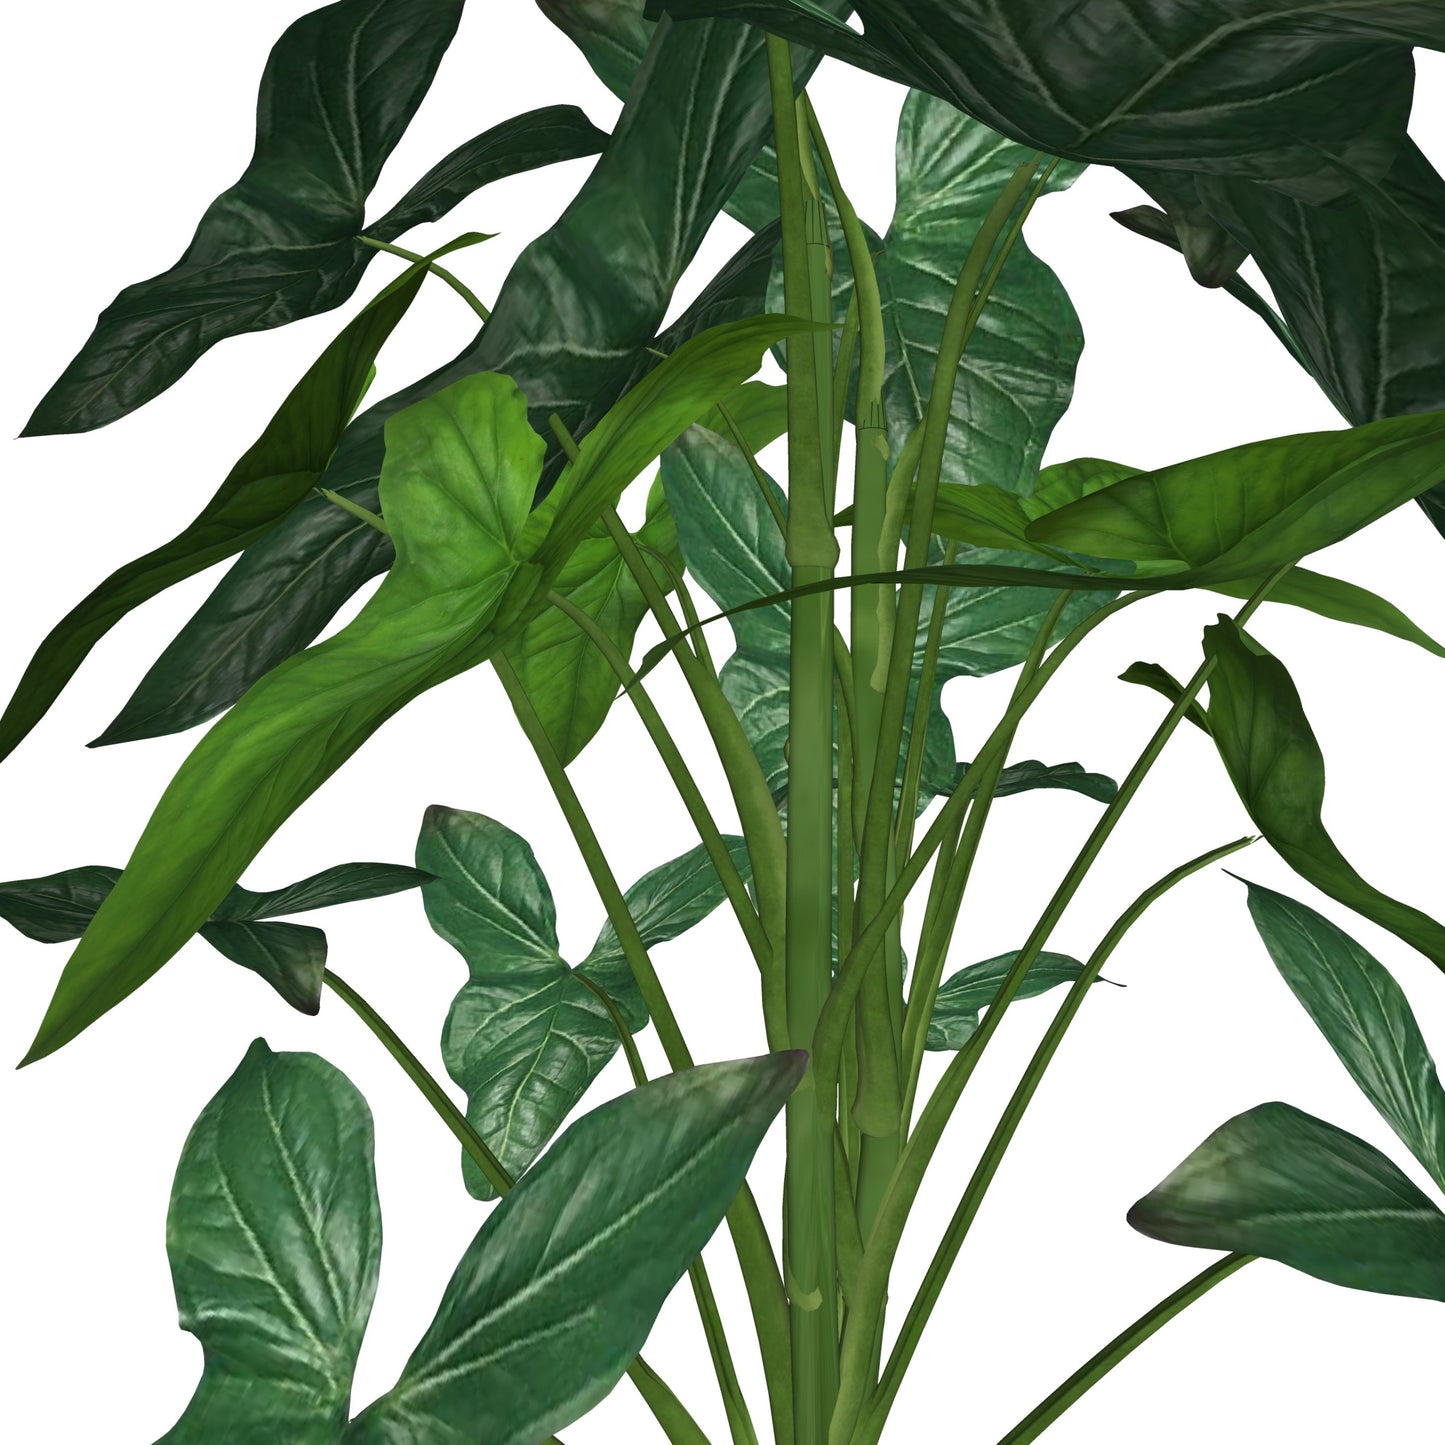 Syngonium Podophyllum 'Albolineatum'